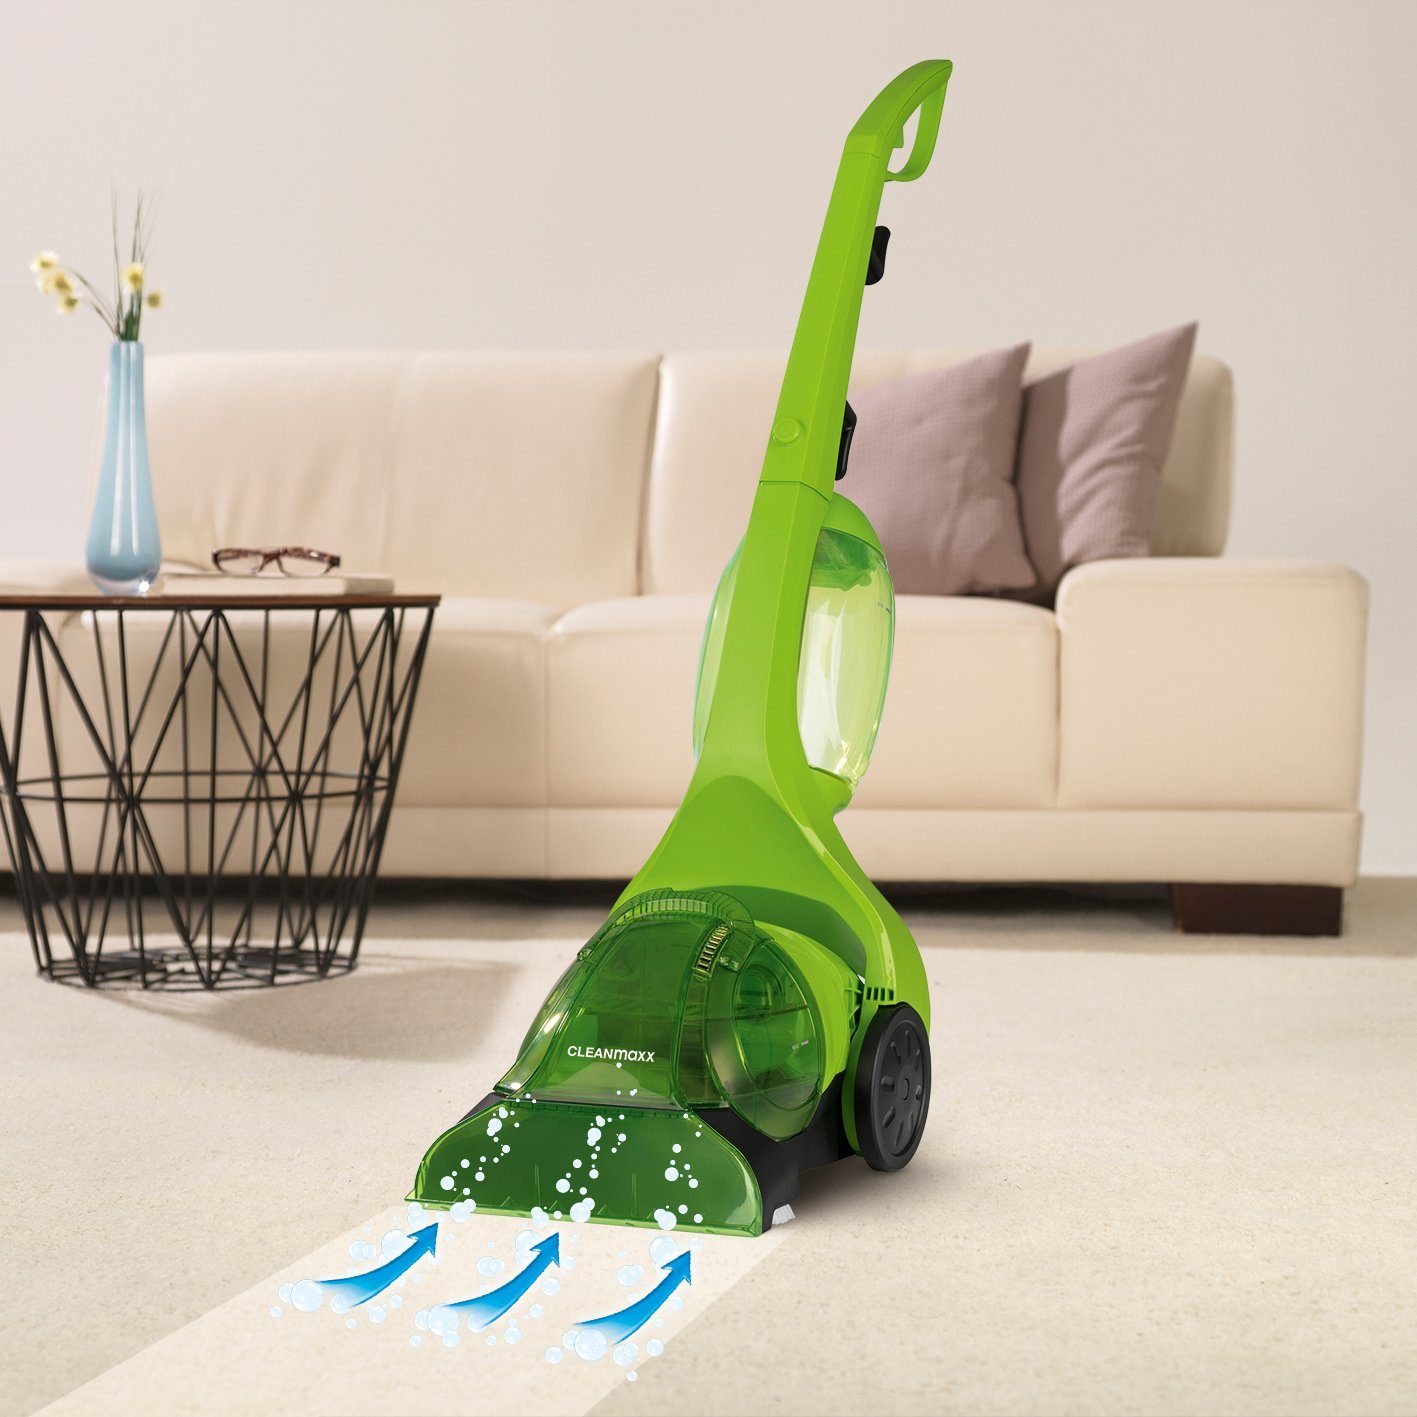 CLEANmaxx Teppichreinigungsgerät Teppichreiniger - Waschsauger - 500W -  limegreen, inkl. Teppichshampoo online kaufen | OTTO